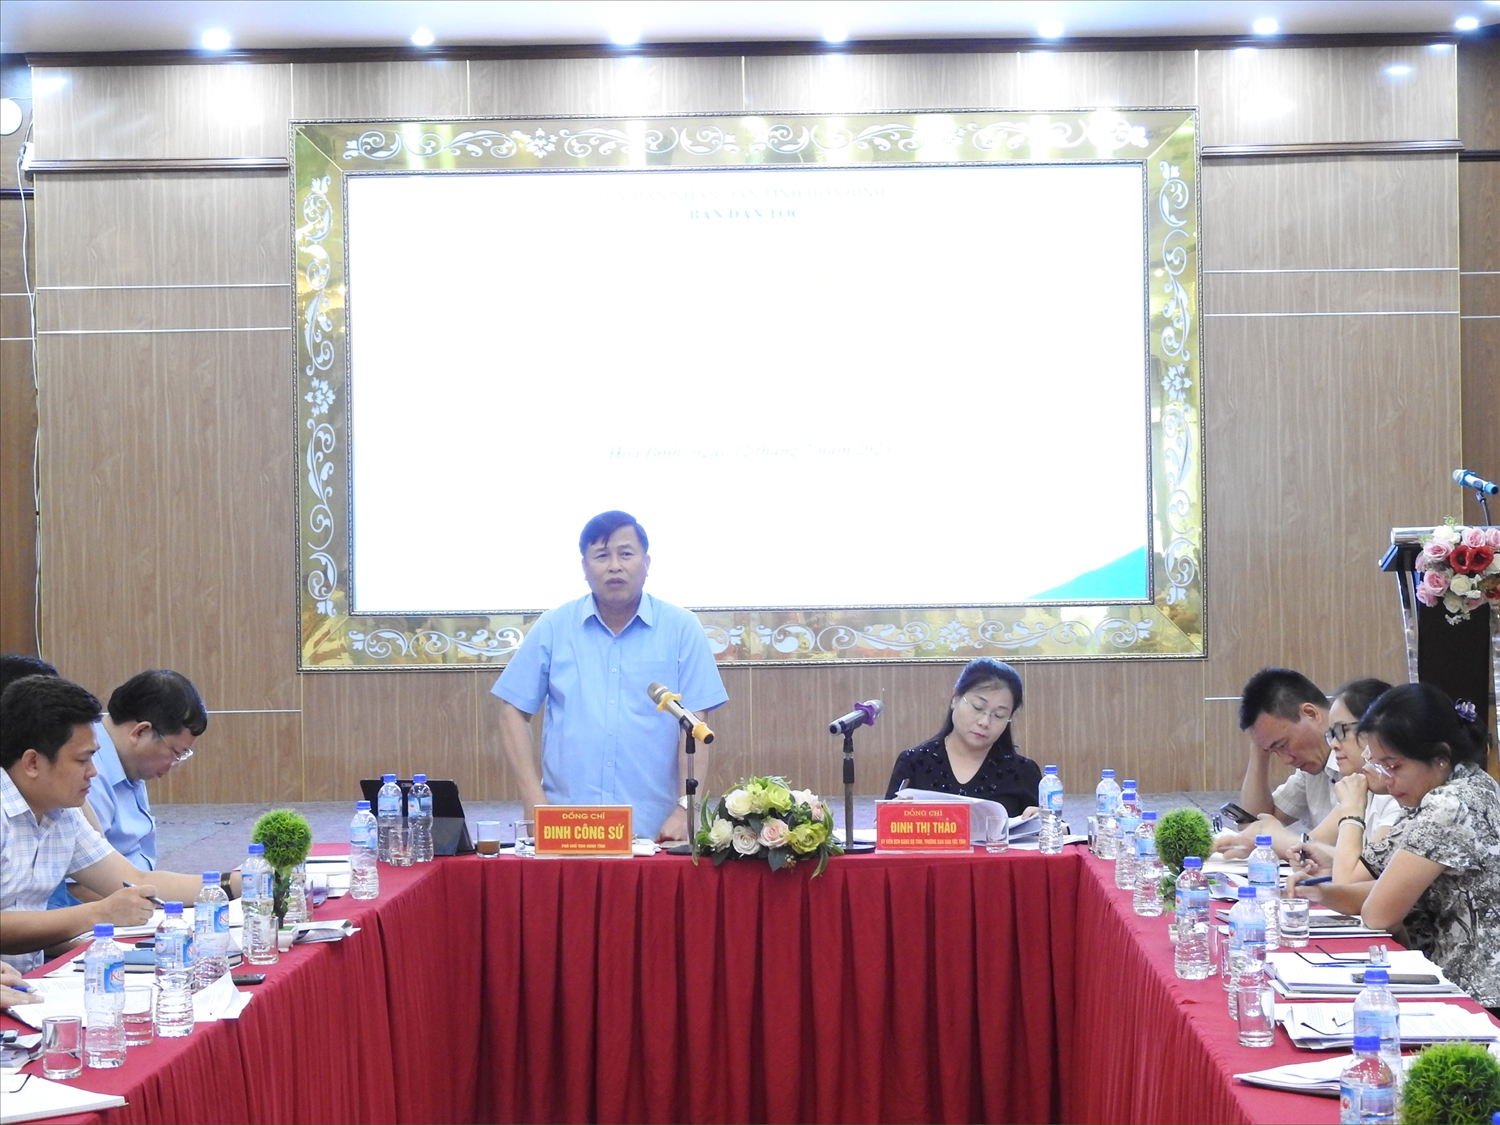 Phó Chủ tịch UBND tỉnh Hòa Binh Đinh Công Sứ phát biểu chỉ đạo Hội nghị